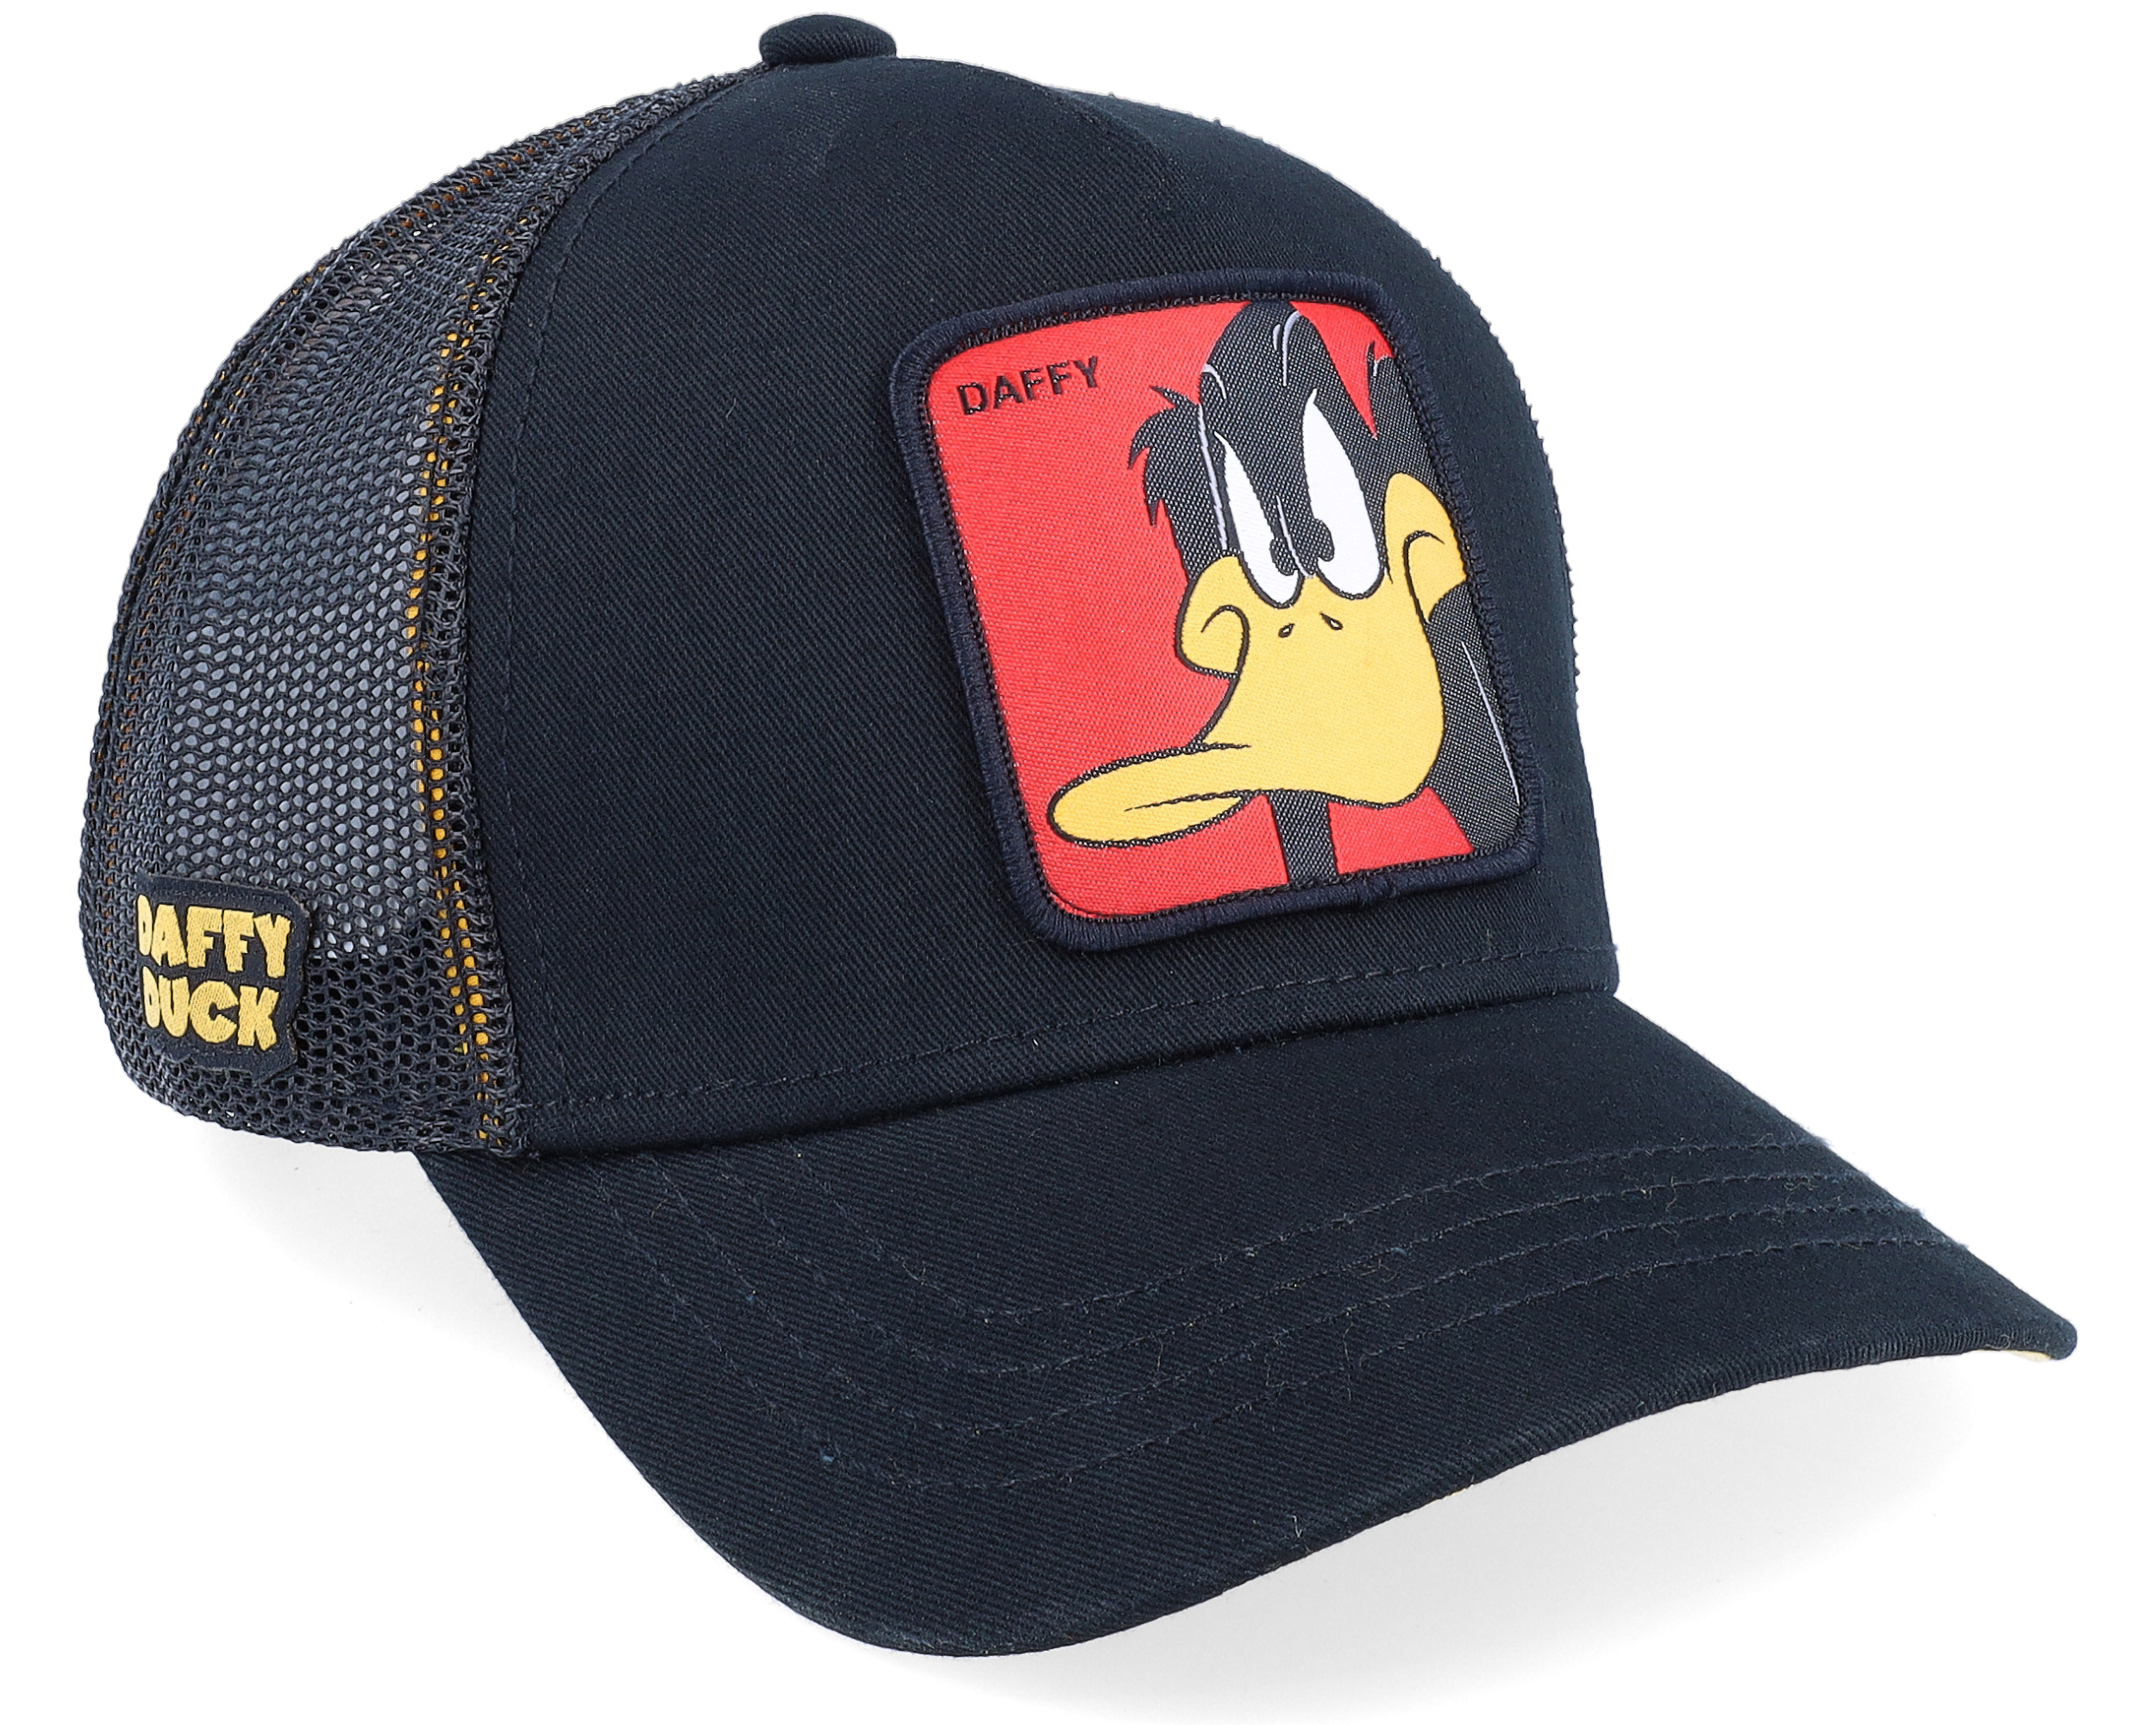 Looney Tunes Daffy Duck Black/Black Trucker - Capslab caps | Hatstore.co.uk